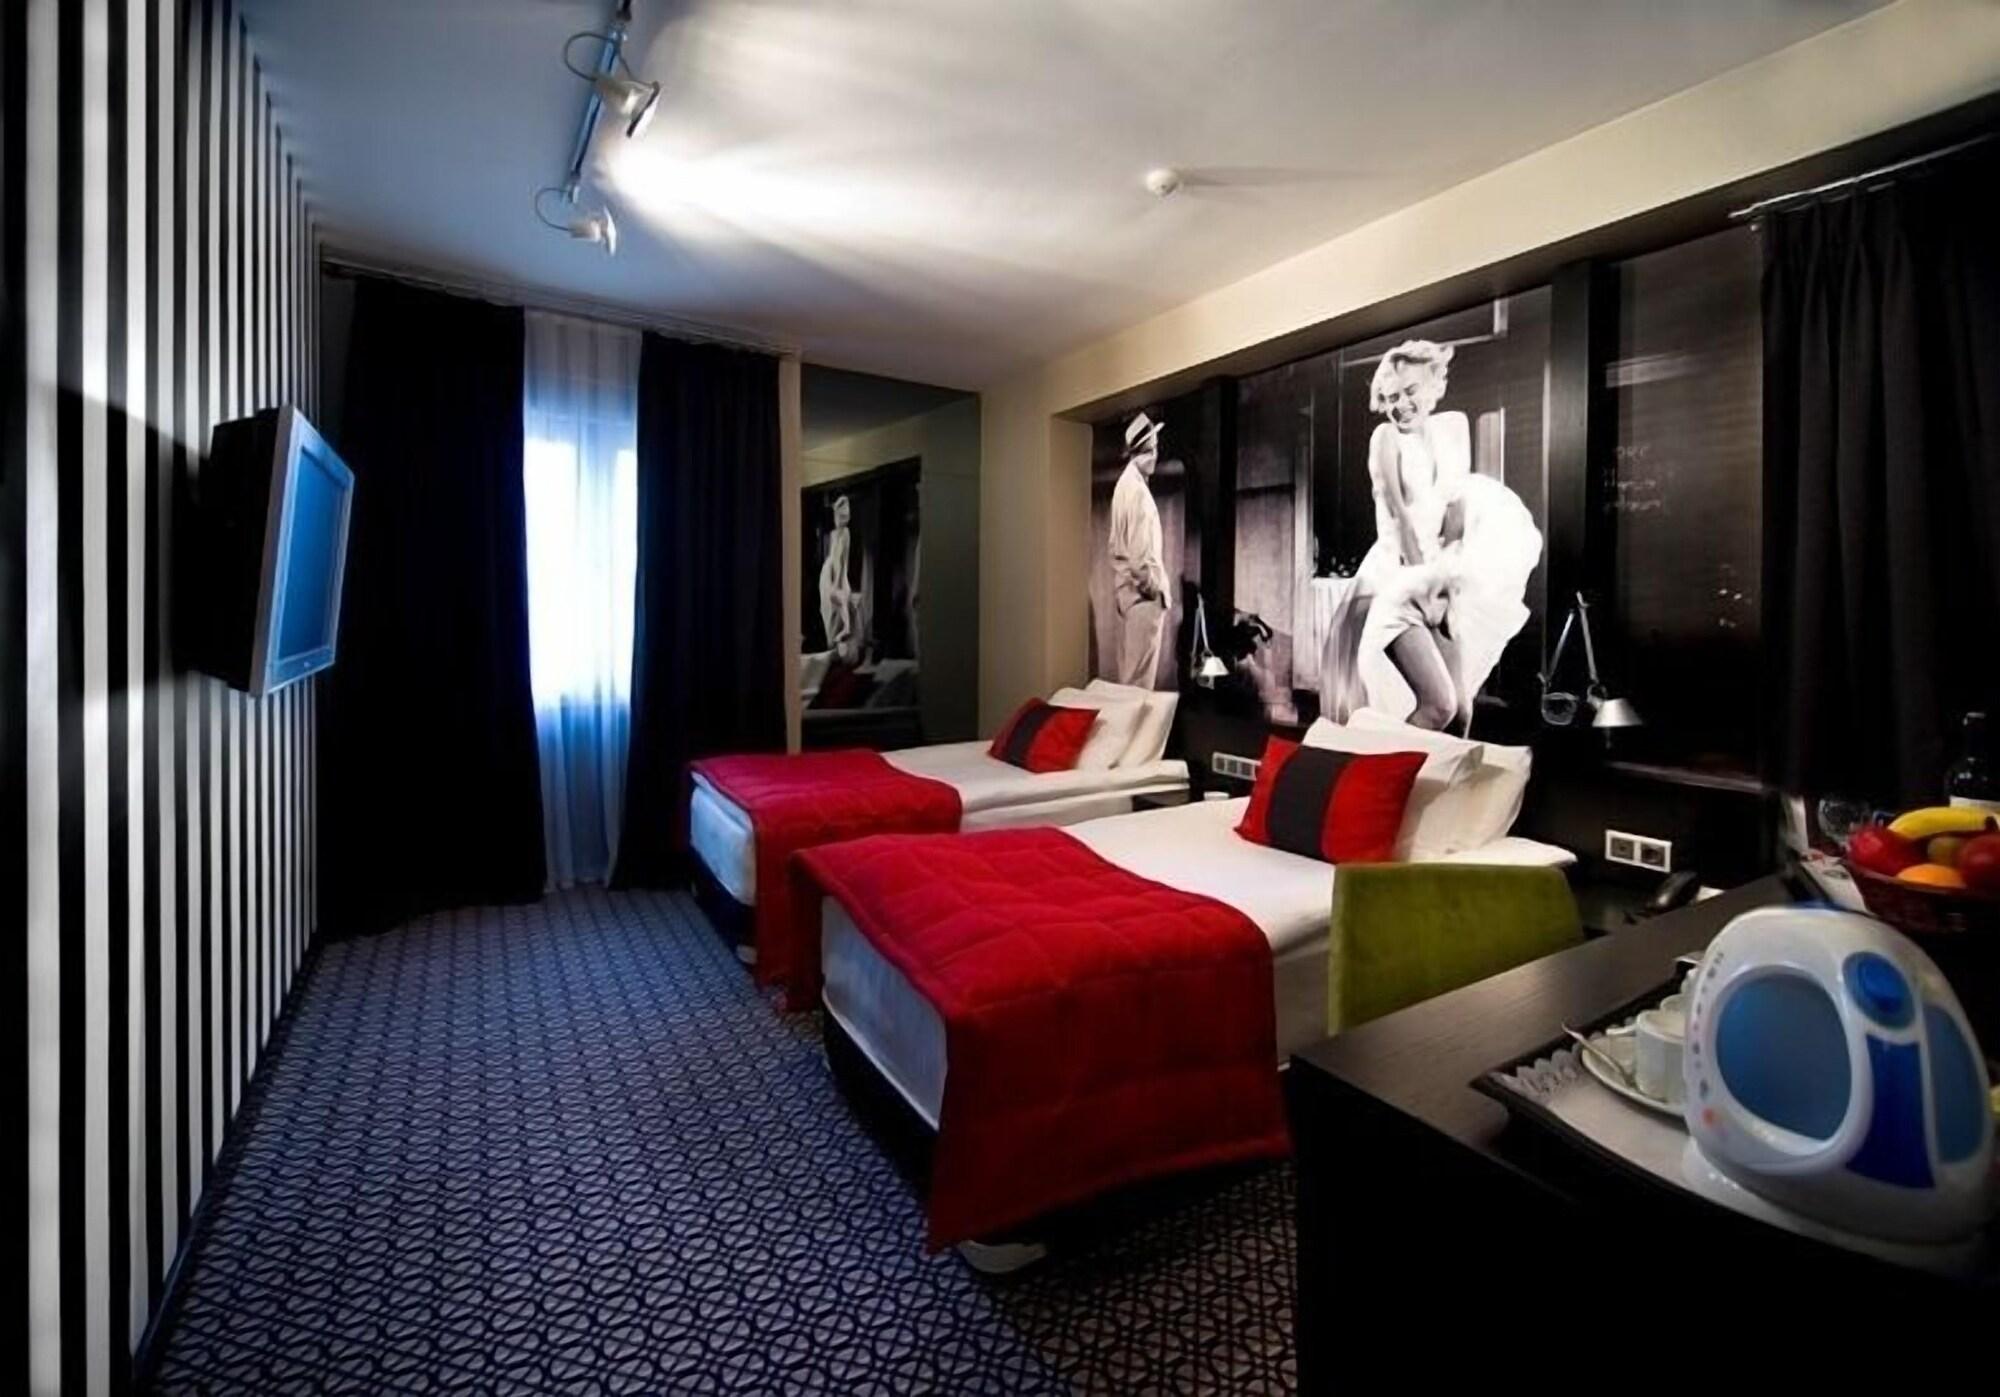 Maltepe 2000 Hotel Ankara Exteriör bild